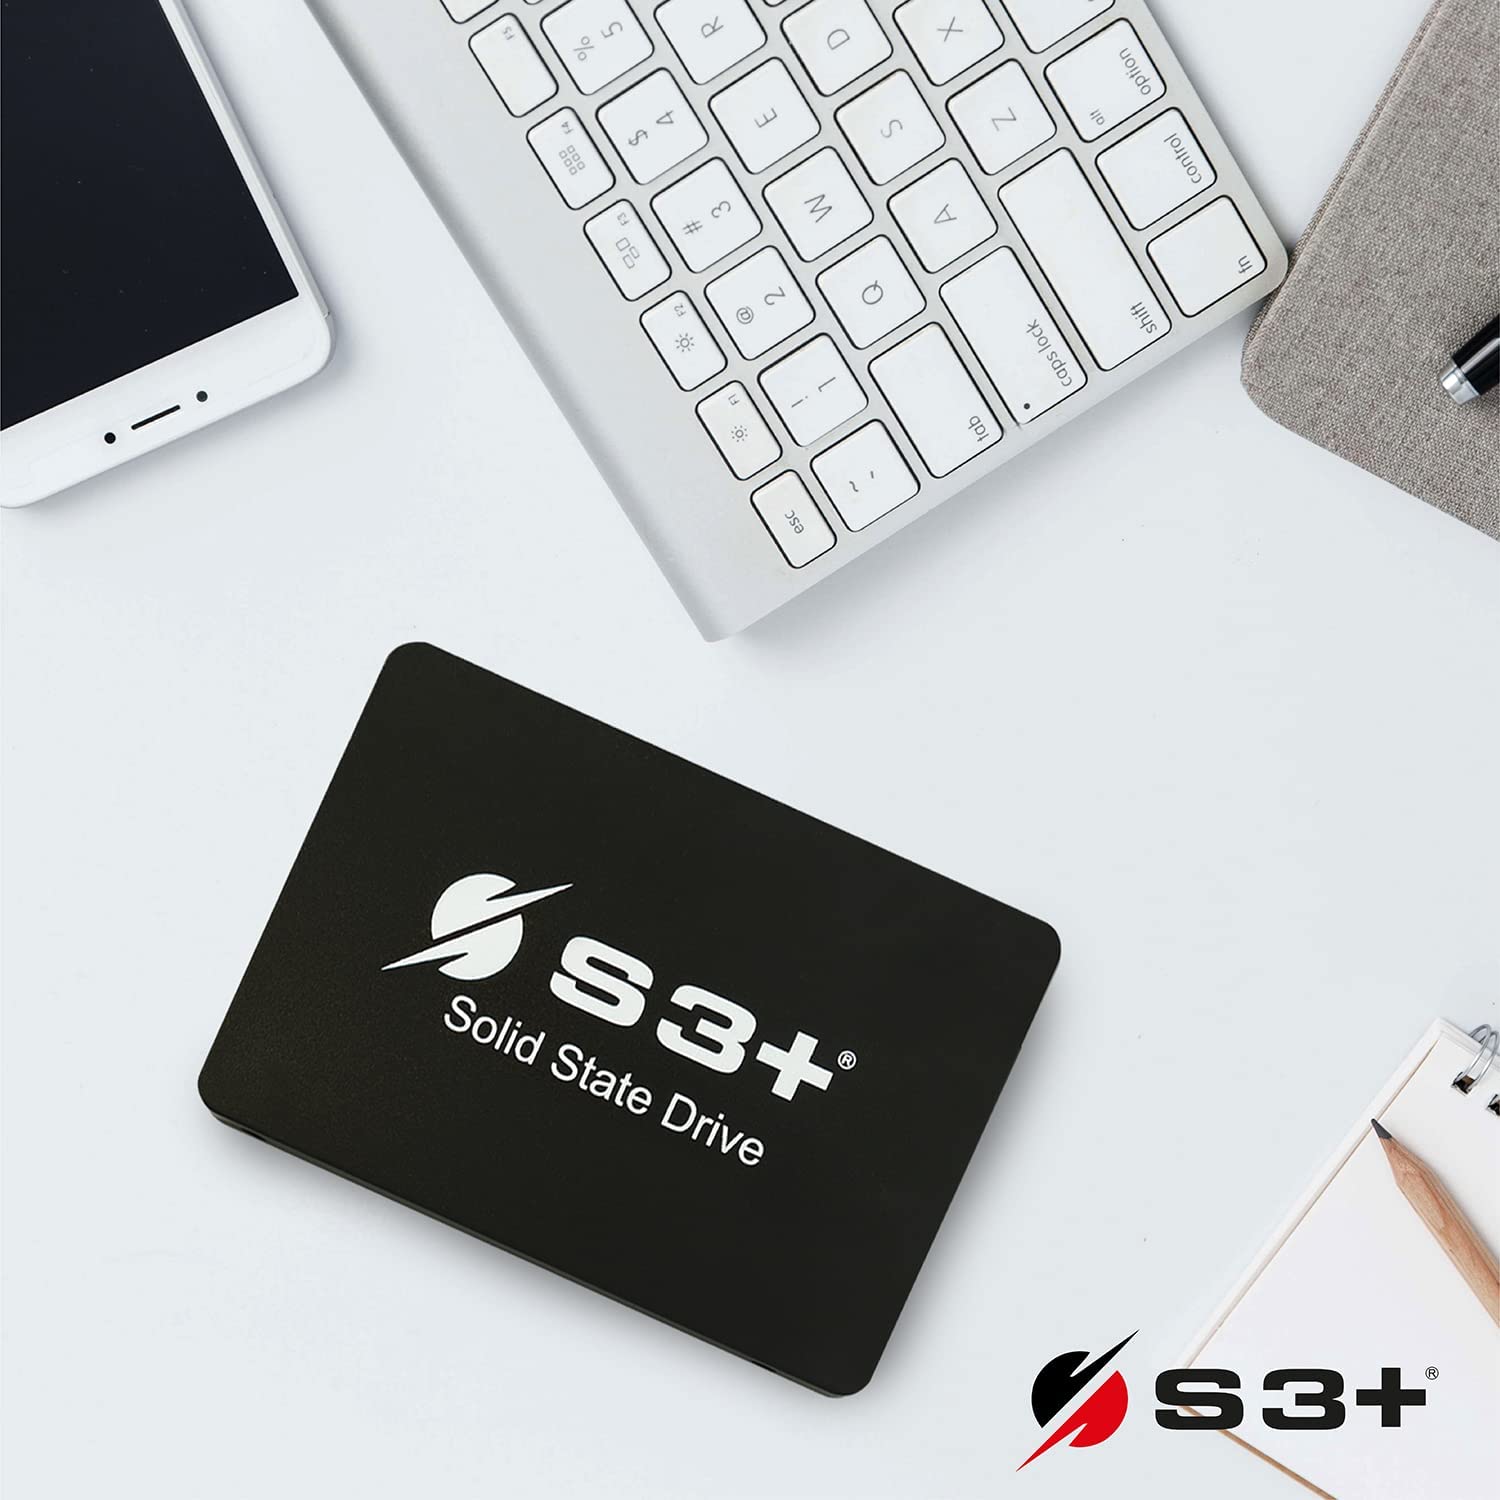 SSD S3+ PRO 2.5 128GB SATA6gb 550MB/s